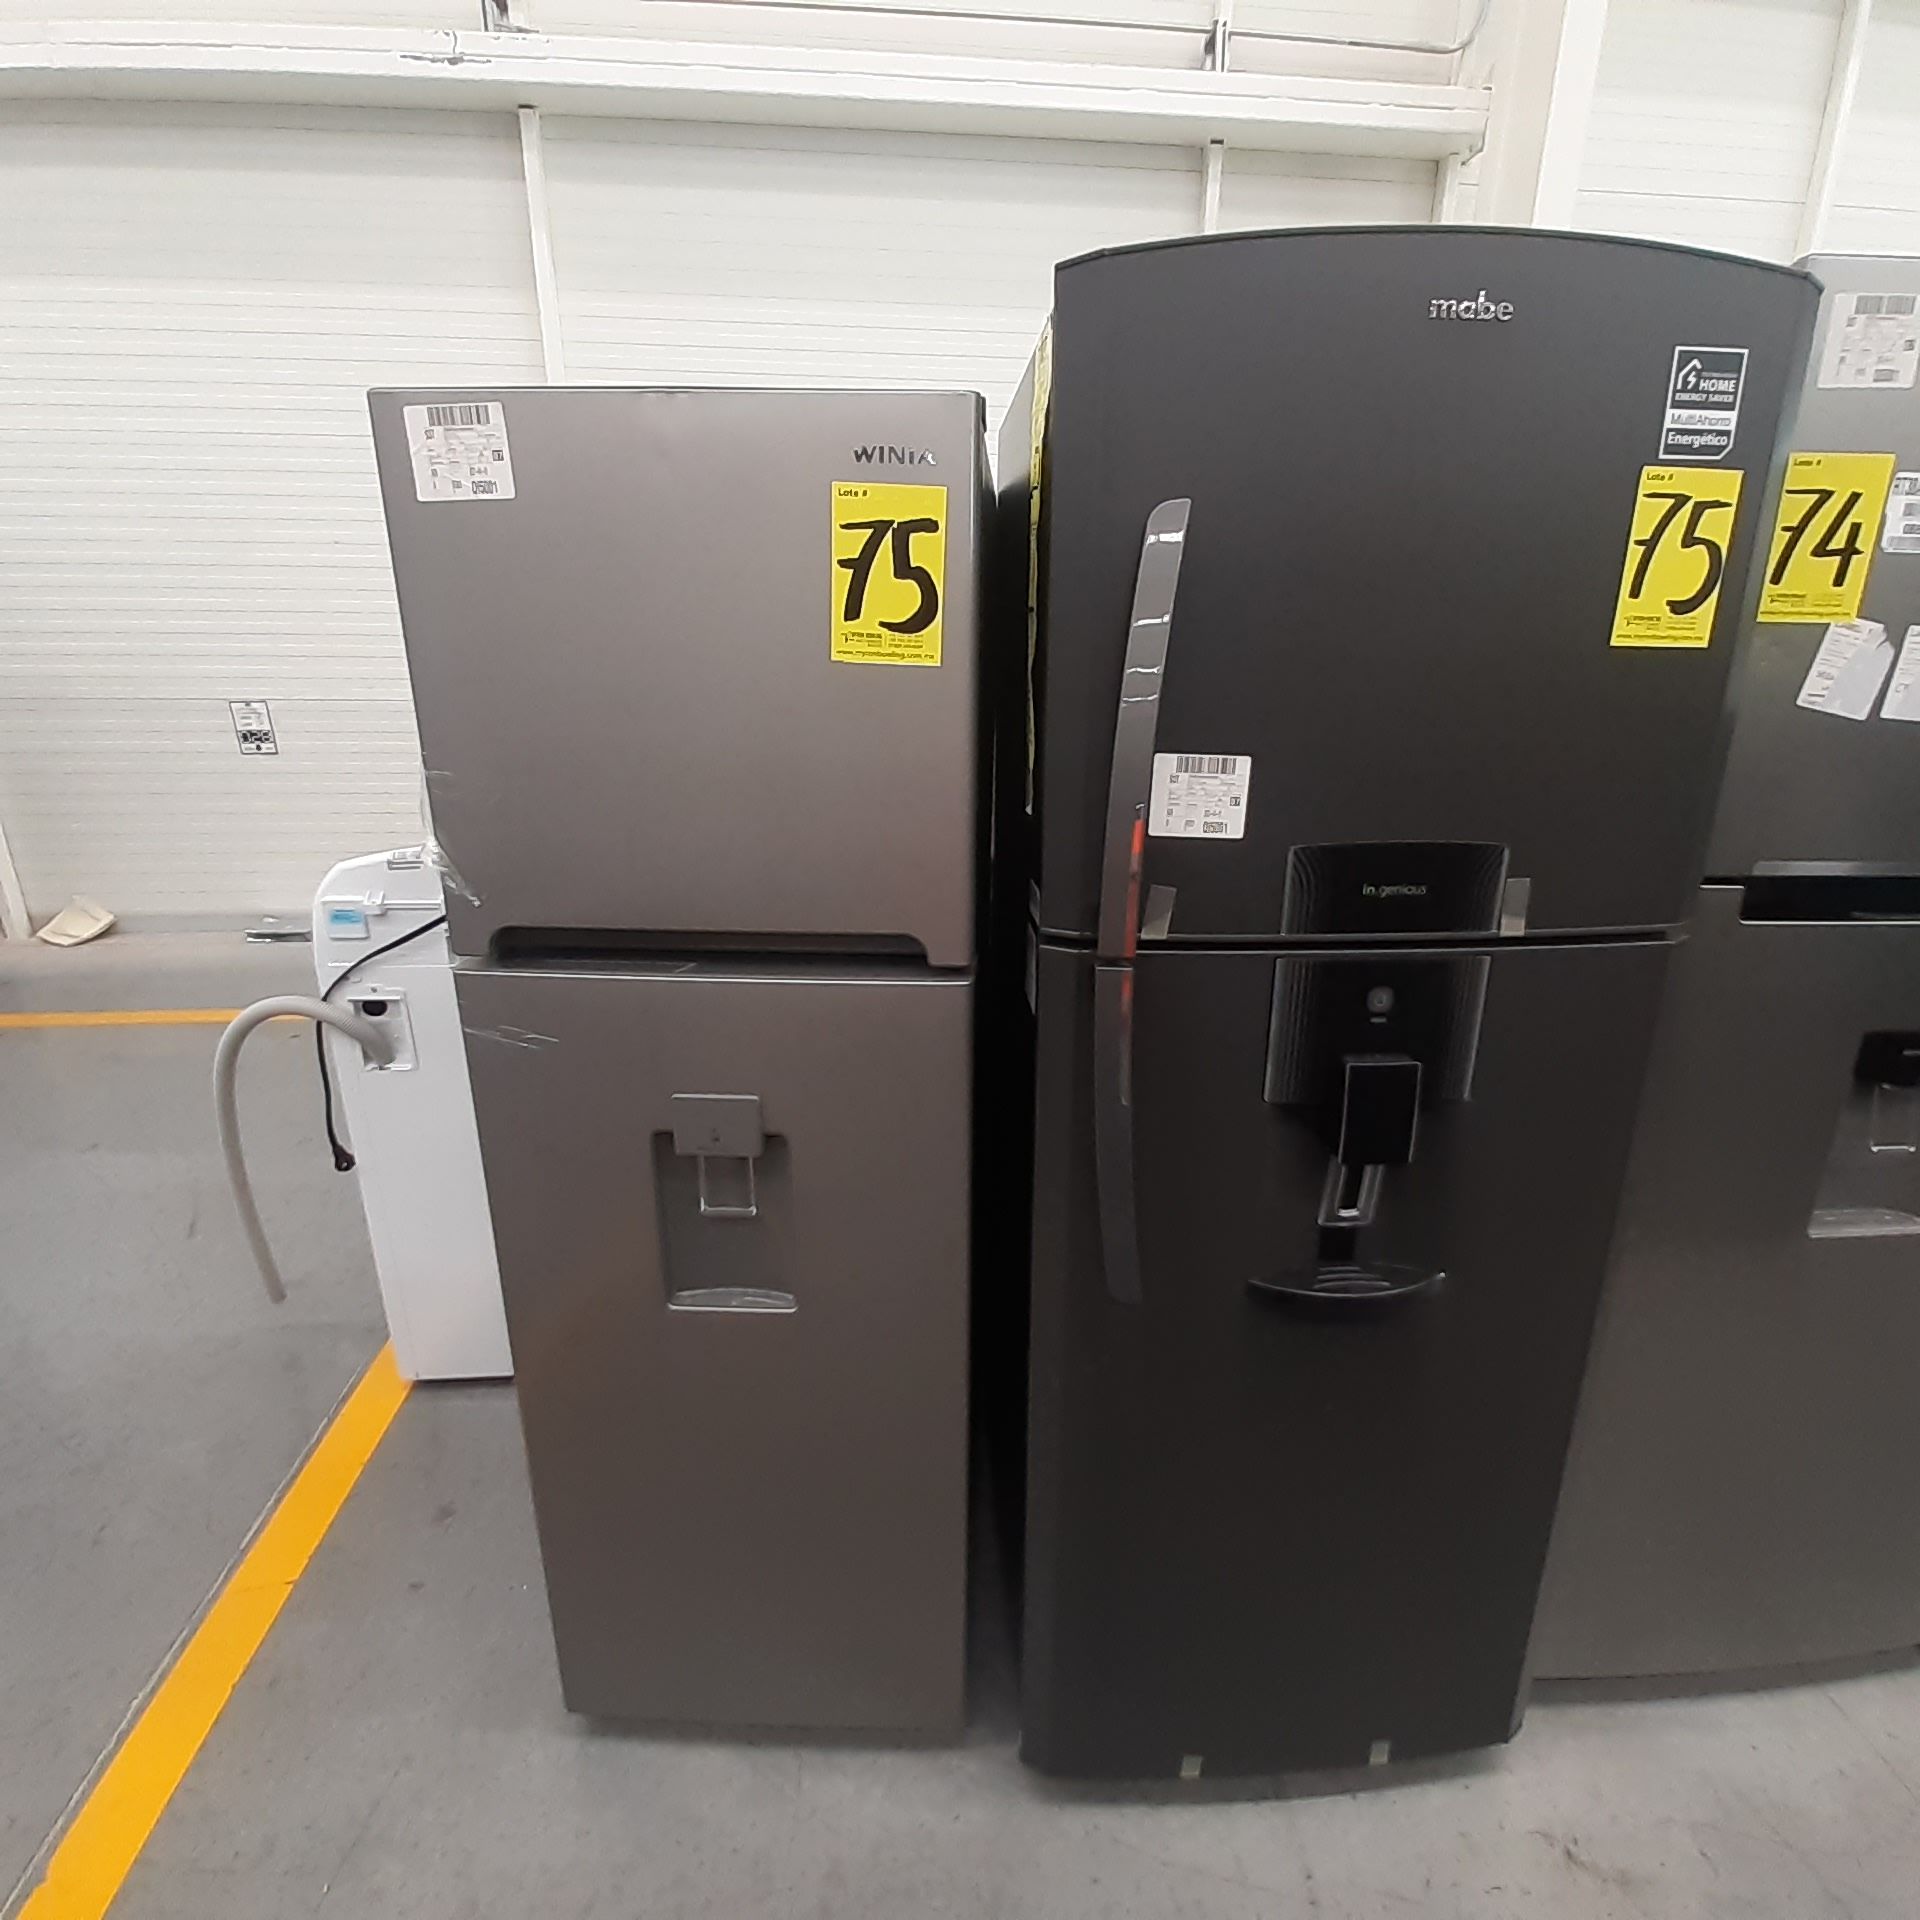 Lote De 2 Refrigeradores: 1 Refrigerador Marca Mabe, 1 Refrigerador Marca Winia, Distintos Modelos - Image 2 of 23